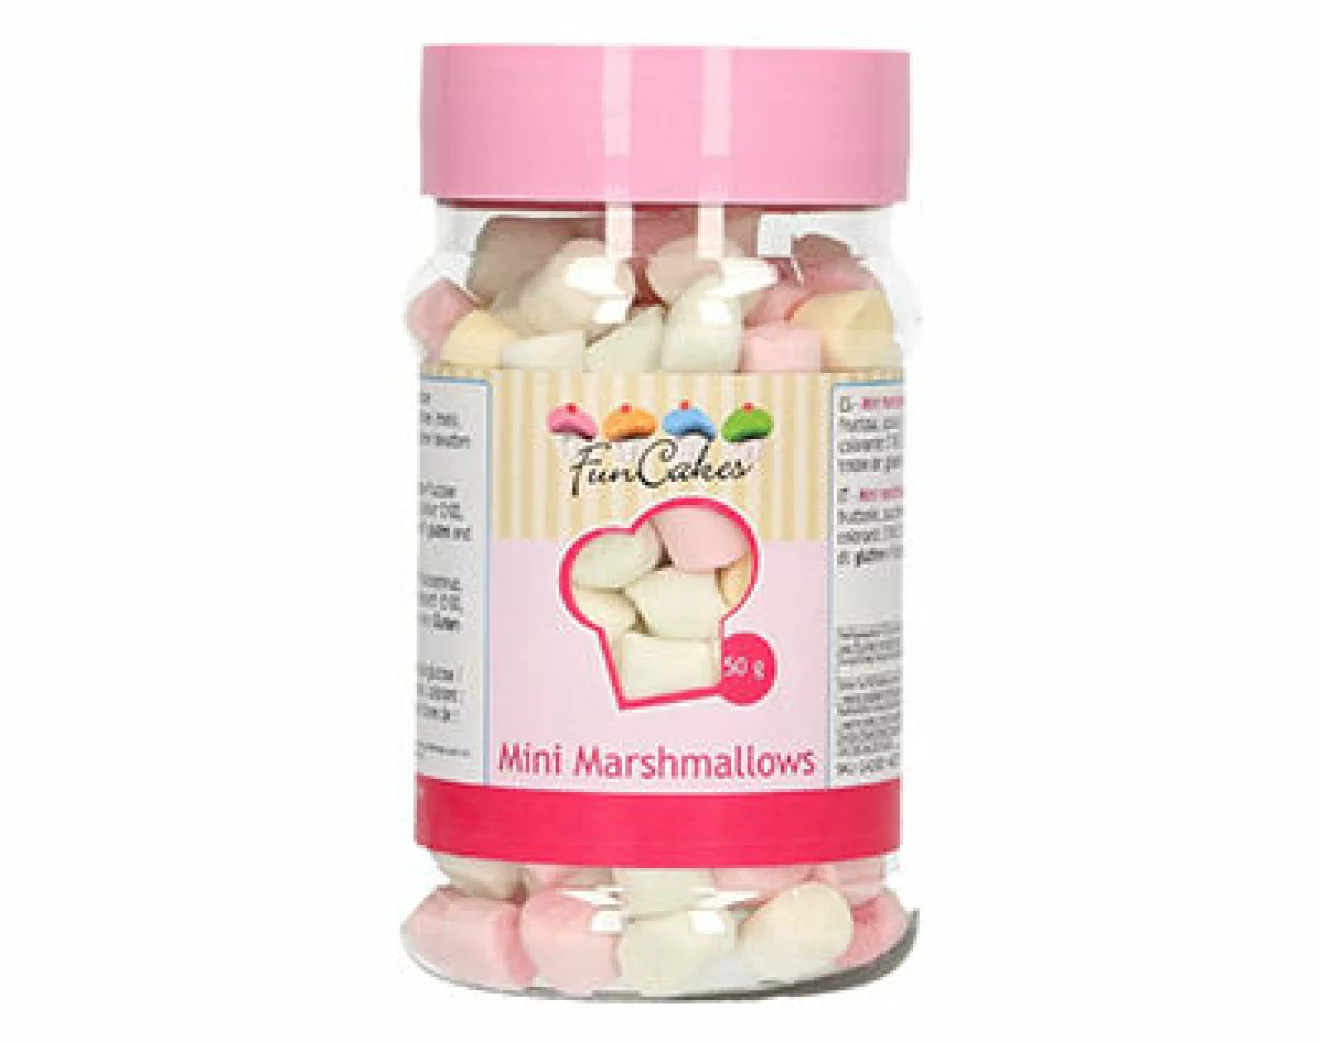 minimarshmallows för chokladbomb